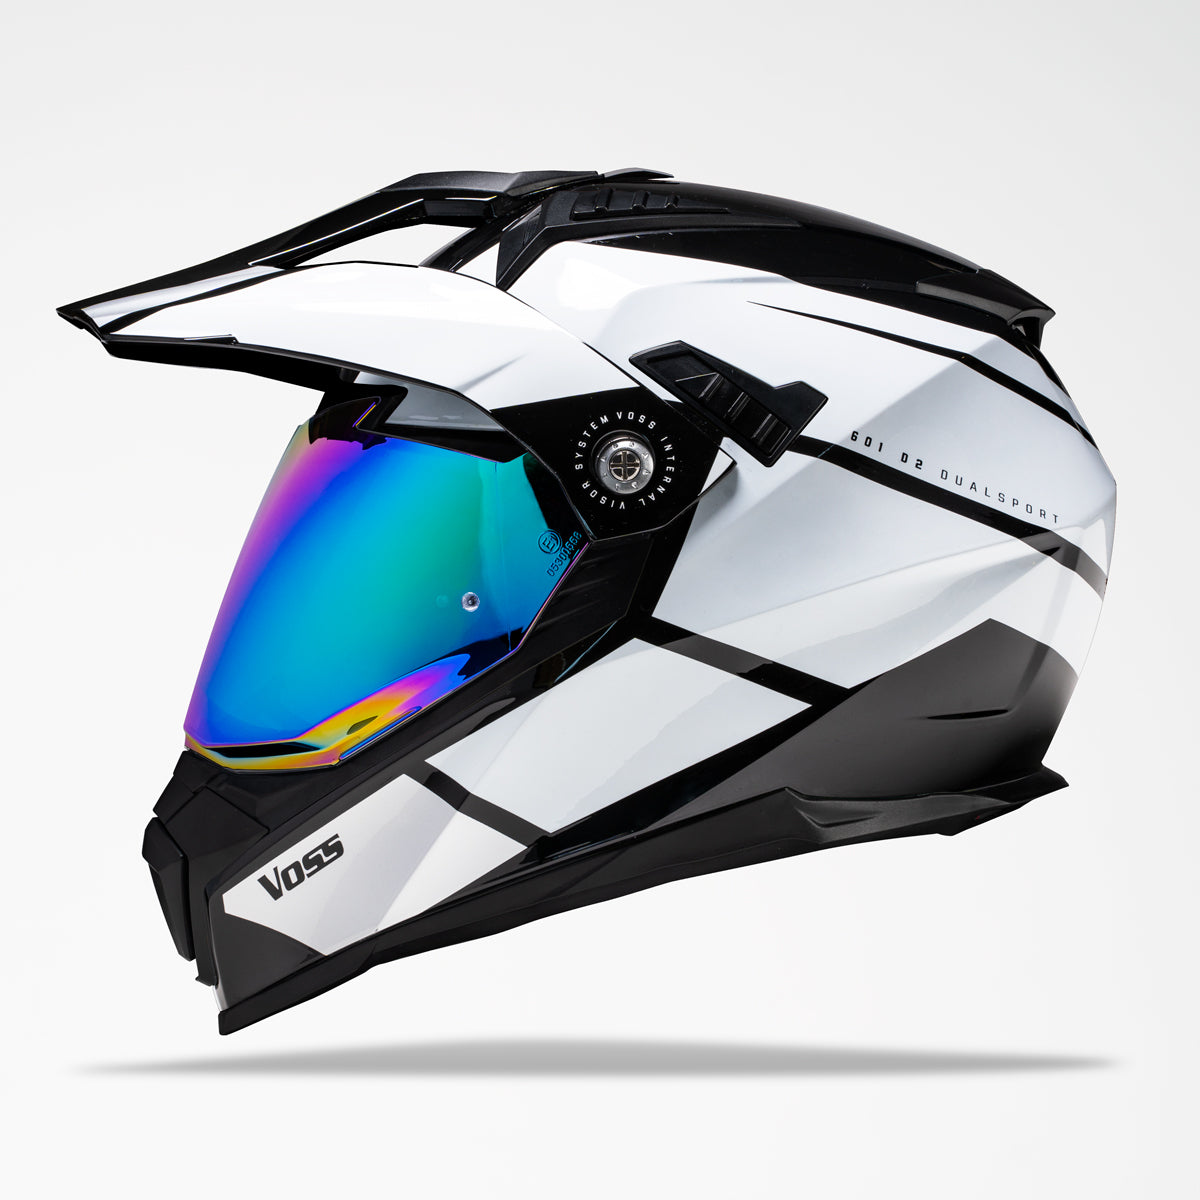 ILM Dual Sport Adventure Motorcycle Helmet Model WS902, 47% OFF